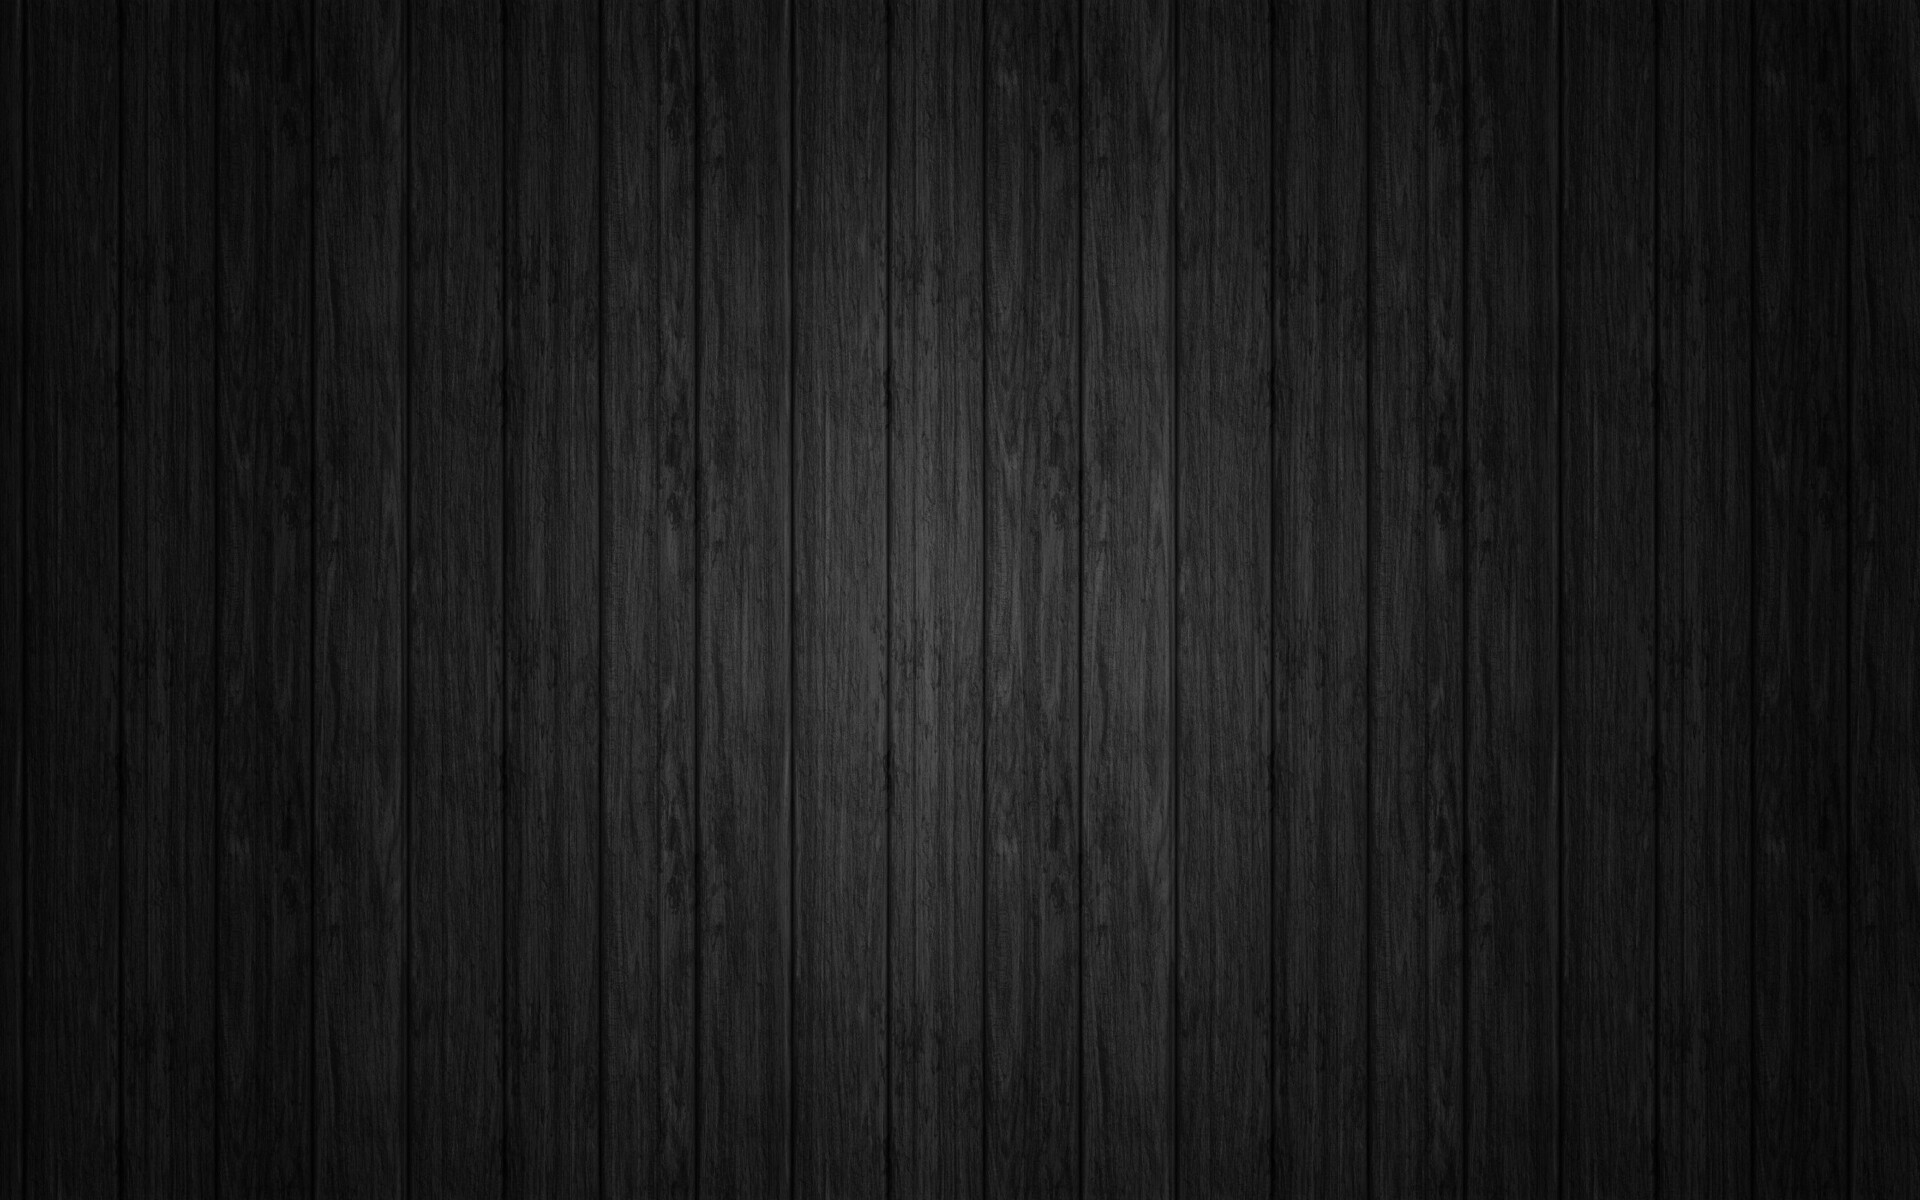 Vật liệu gỗ đen với vẻ ngoài sang trọng và tinh tế đem đến cho không gian của bạn sự ấn tượng mạnh mẽ. Từ những đường vân gỗ mịn màng tới màu đen bóng láng, vật liệu gỗ đen giúp tạo nên không gian tối giản và đầy lịch lãm. Hãy khám phá những vật liệu gỗ đen để mang đến cho không gian một vẻ đẹp độc đáo và sang trọng.